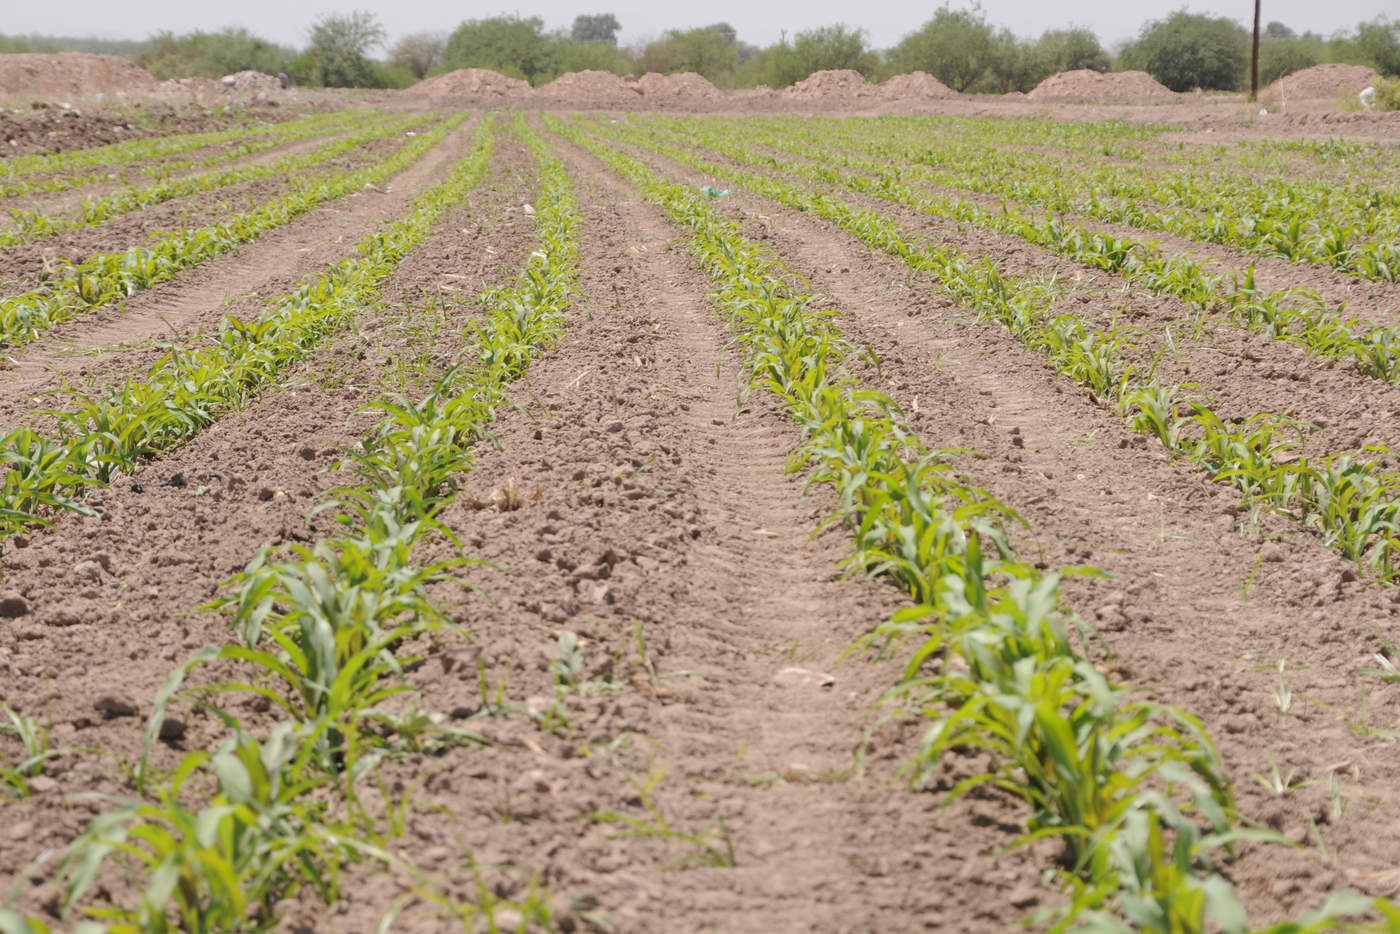 El apoyo que se otorgará por el Gobierno del Estado será de mil 500 pesos por hectárea de cultivo, hasta un máximo de 4 hectáreas por productor en los cultivos de maíz y sorgo, únicamente. (ARCHIVO)
